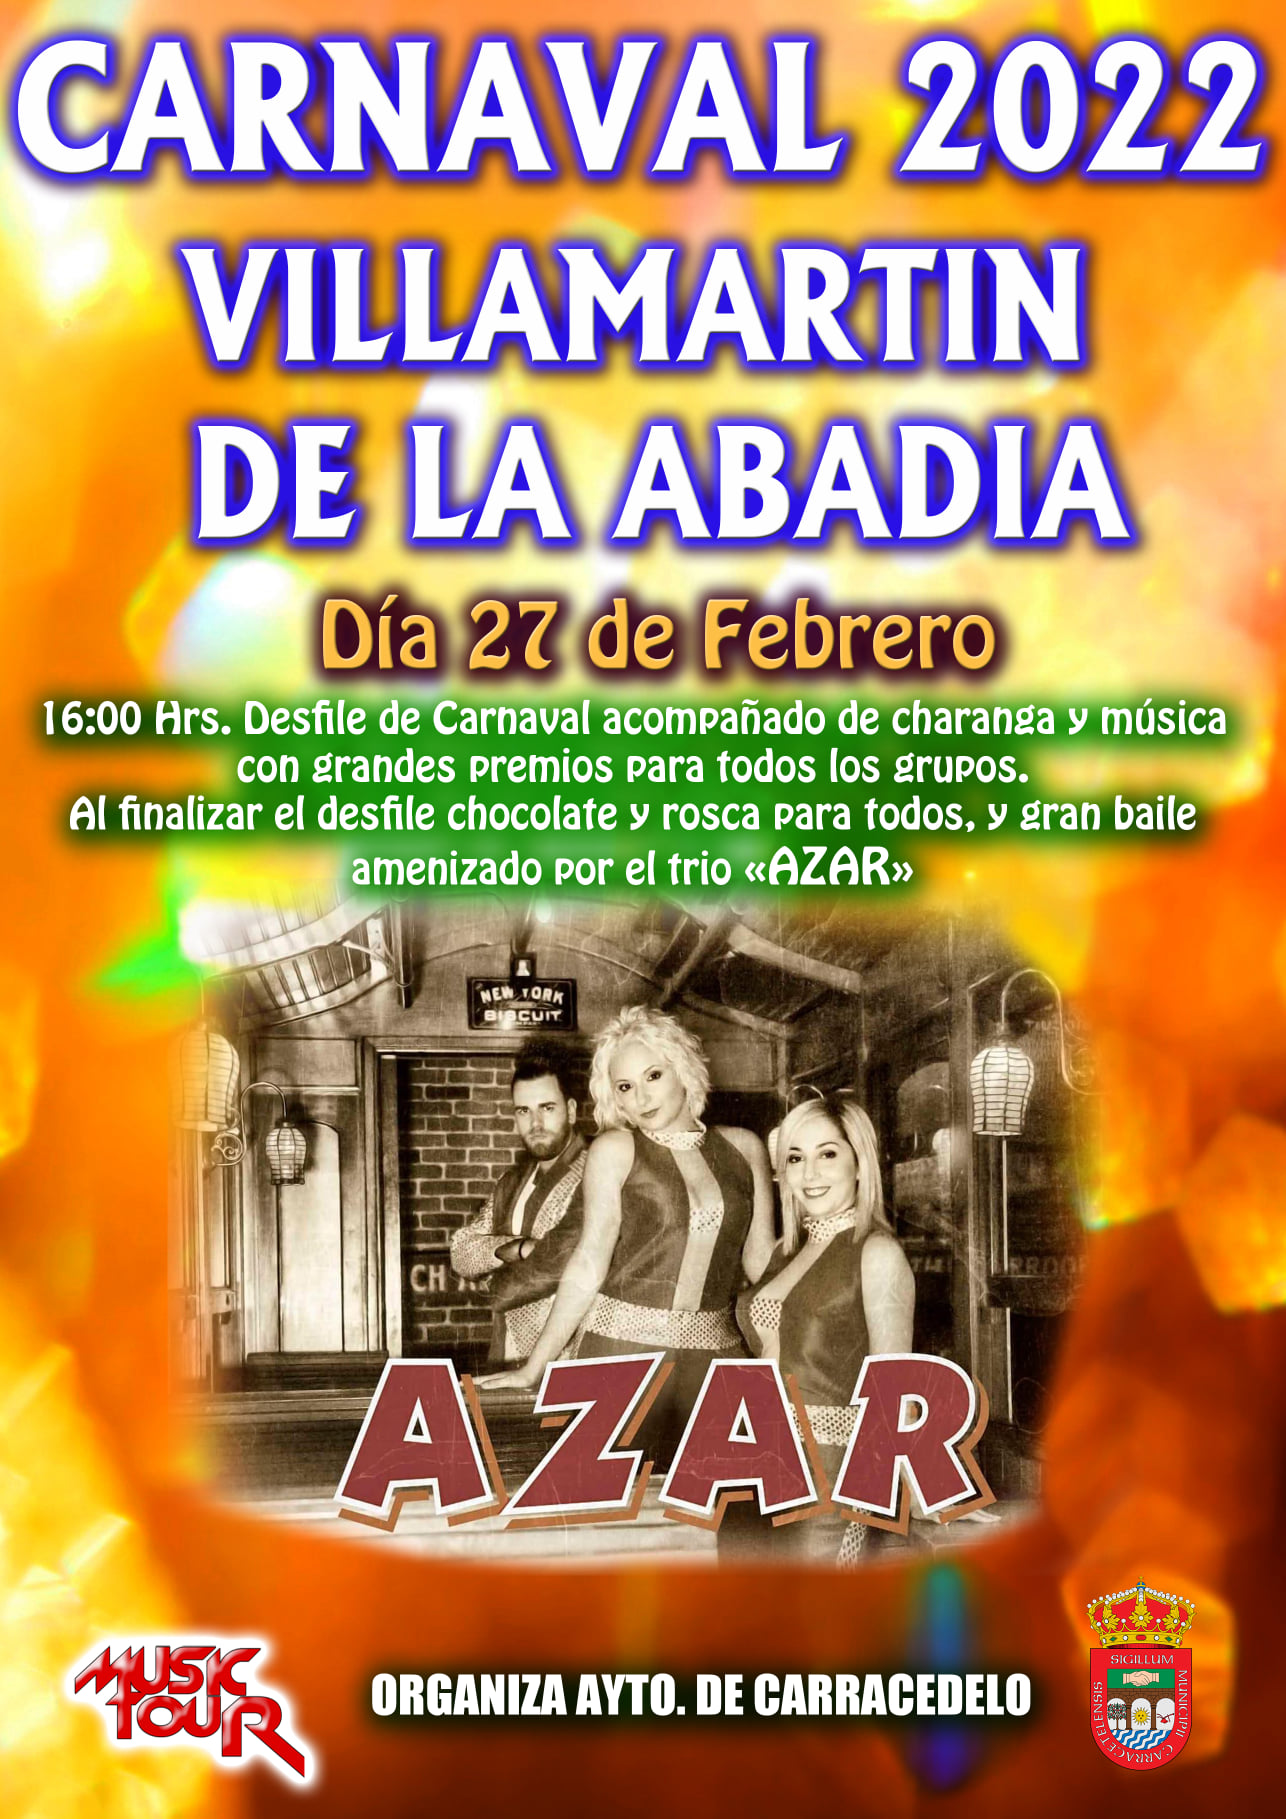 Carnaval 2022 en Villamartín de la Abadía 2